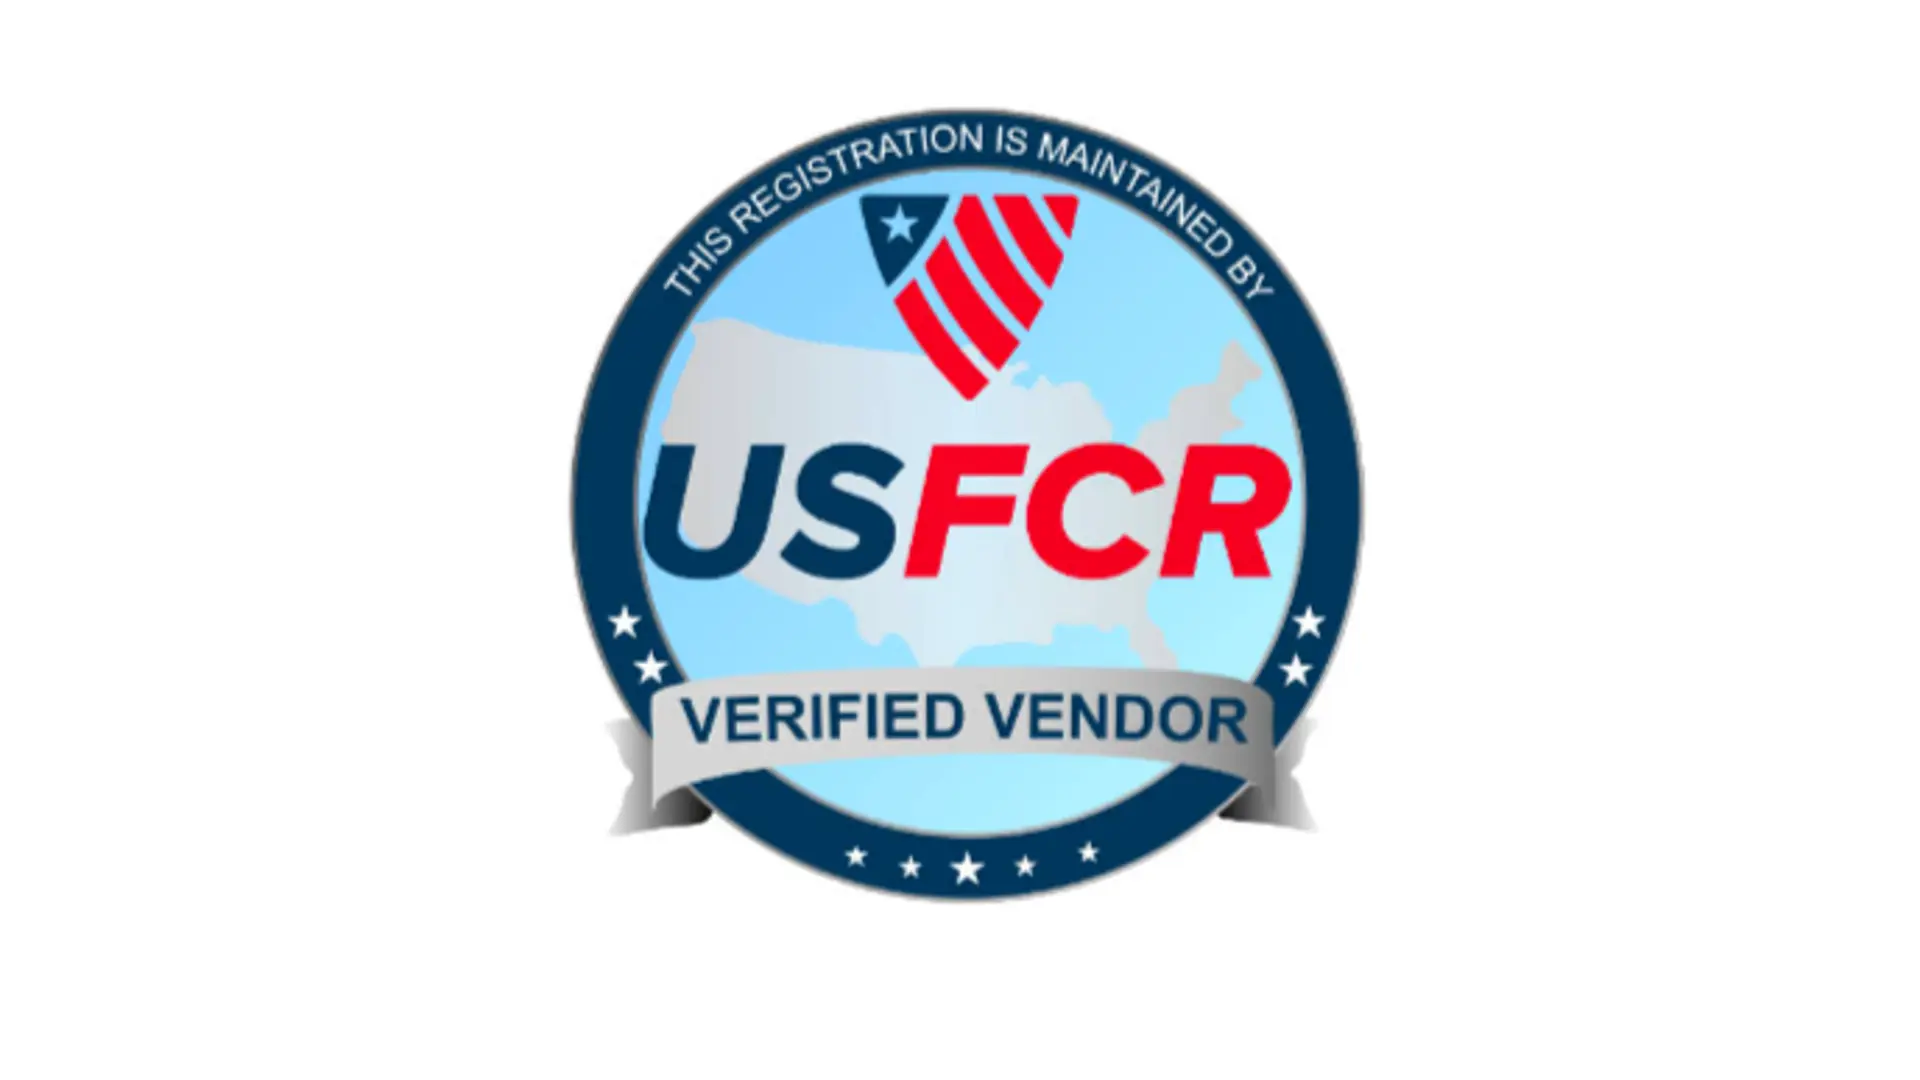 Usfcr Verified Vendor Logo